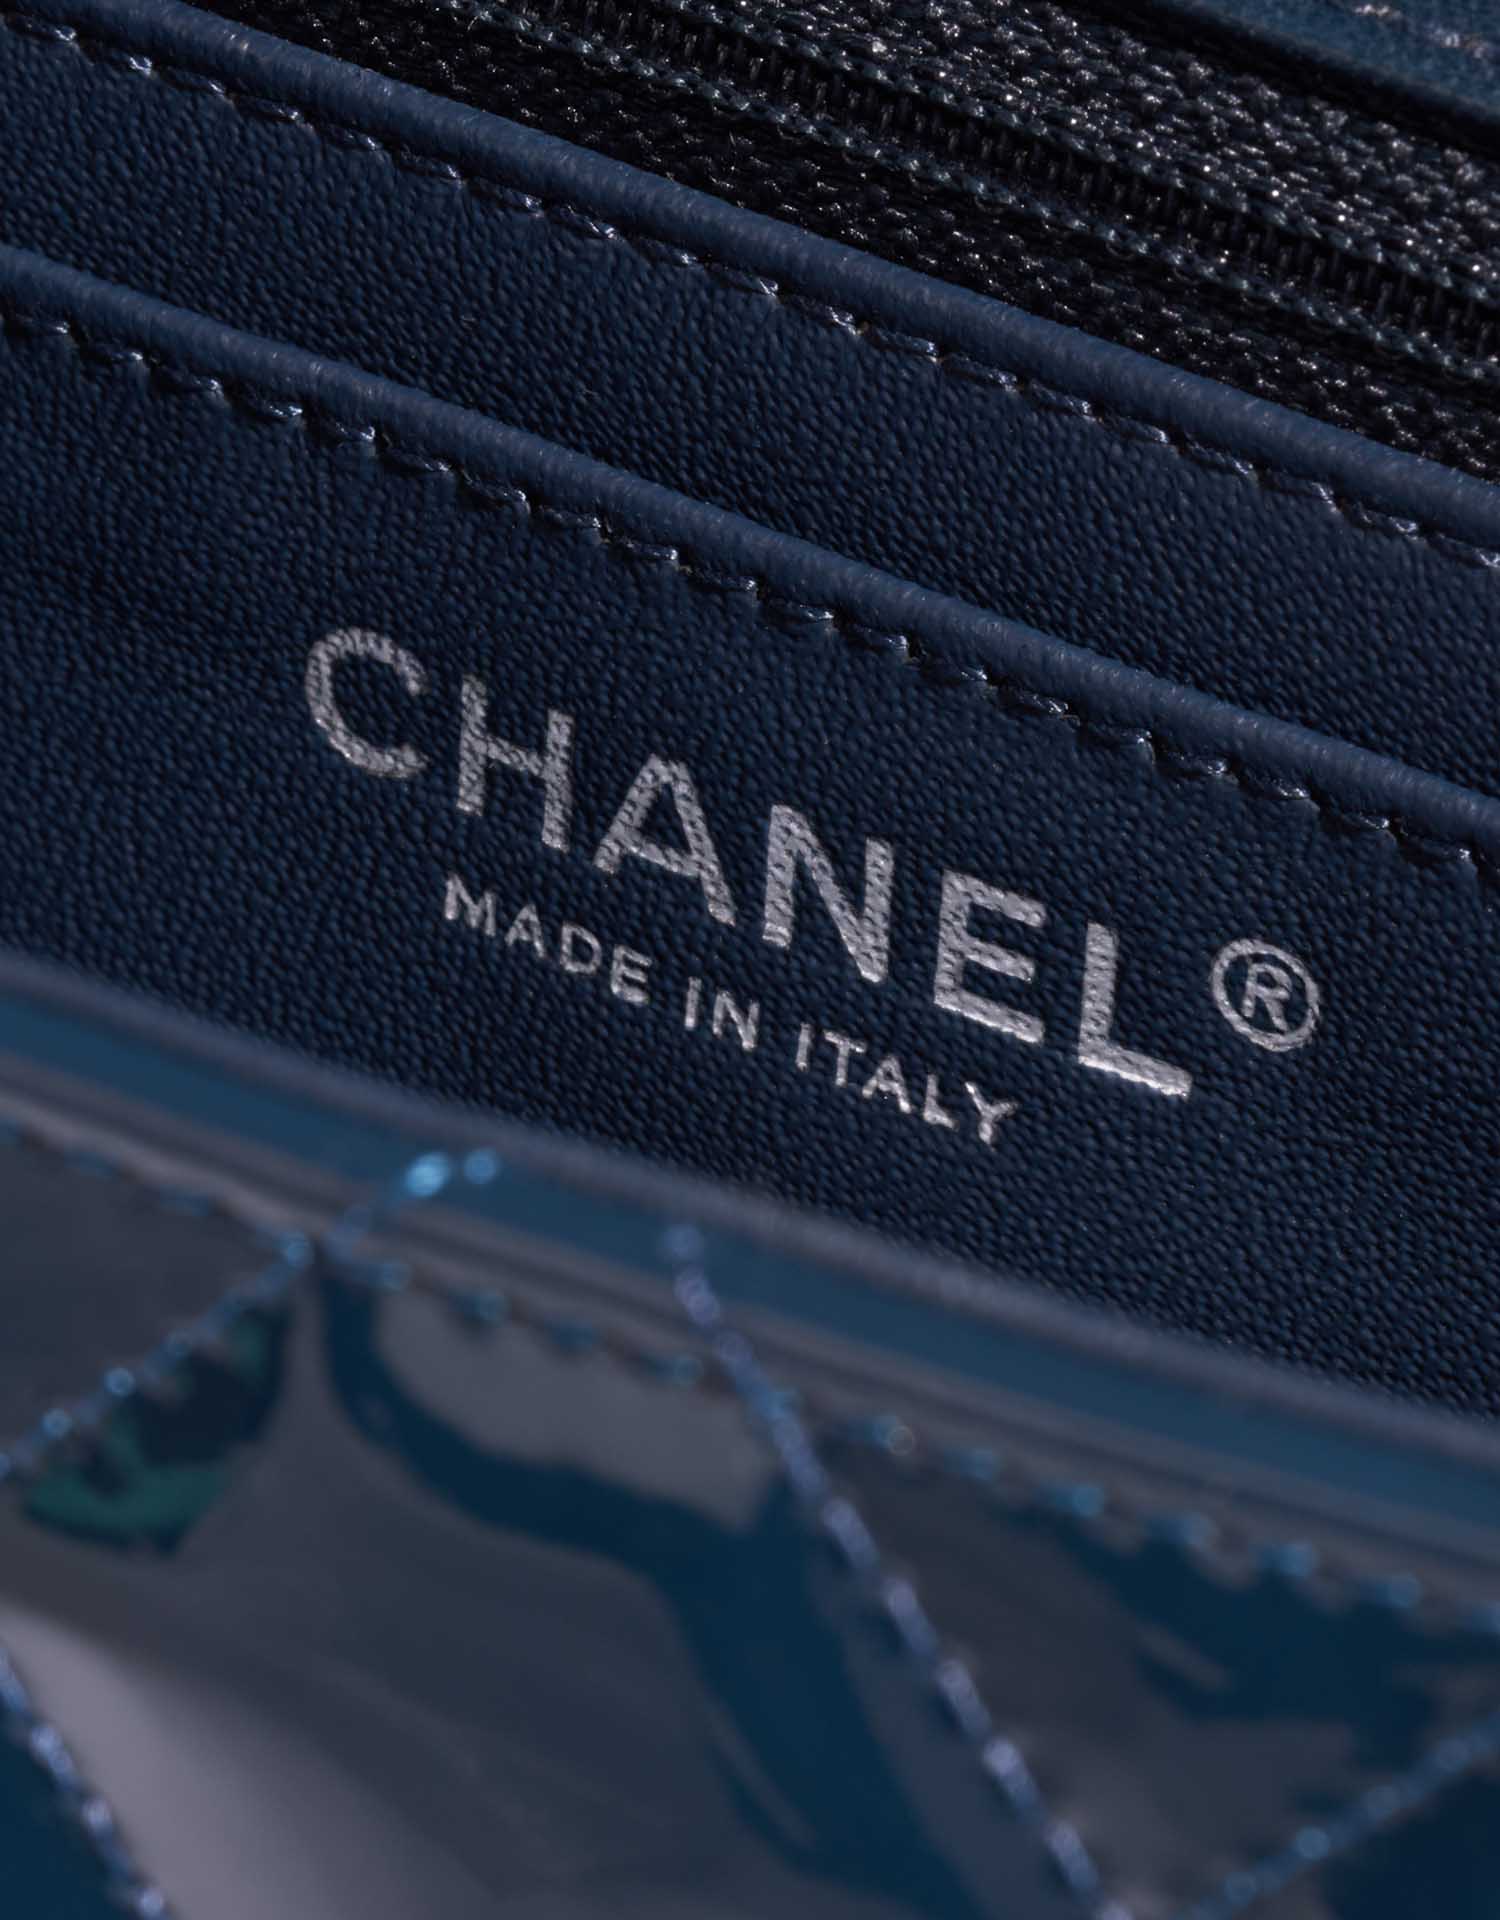 Sac Chanel d'occasion Classique Maxi Cuir verni Bleu Marine Logo | Vendez votre sac de créateur sur Saclab.com